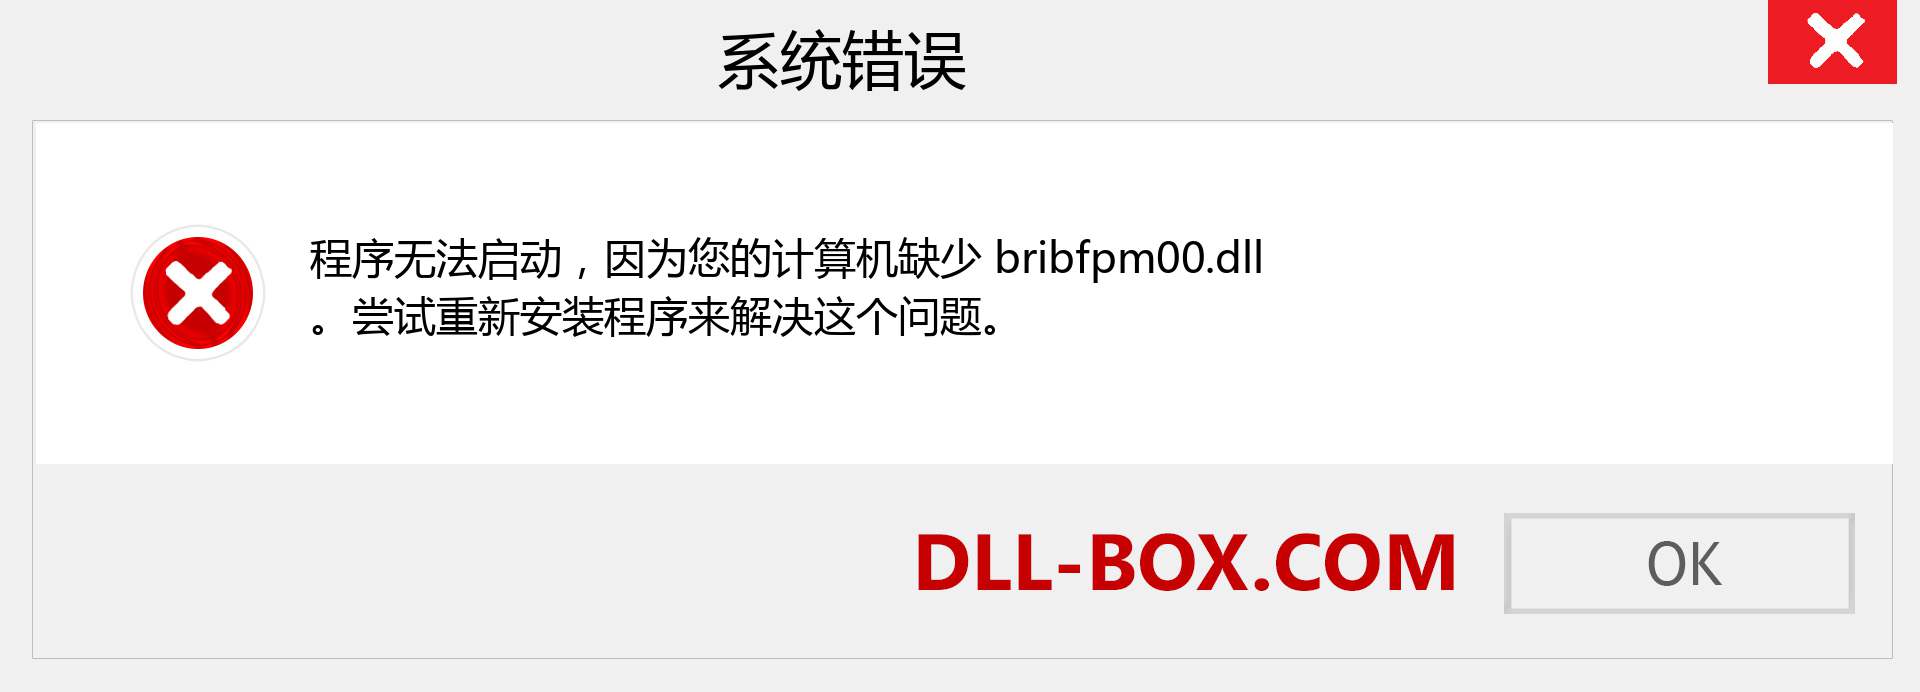 bribfpm00.dll 文件丢失？。 适用于 Windows 7、8、10 的下载 - 修复 Windows、照片、图像上的 bribfpm00 dll 丢失错误